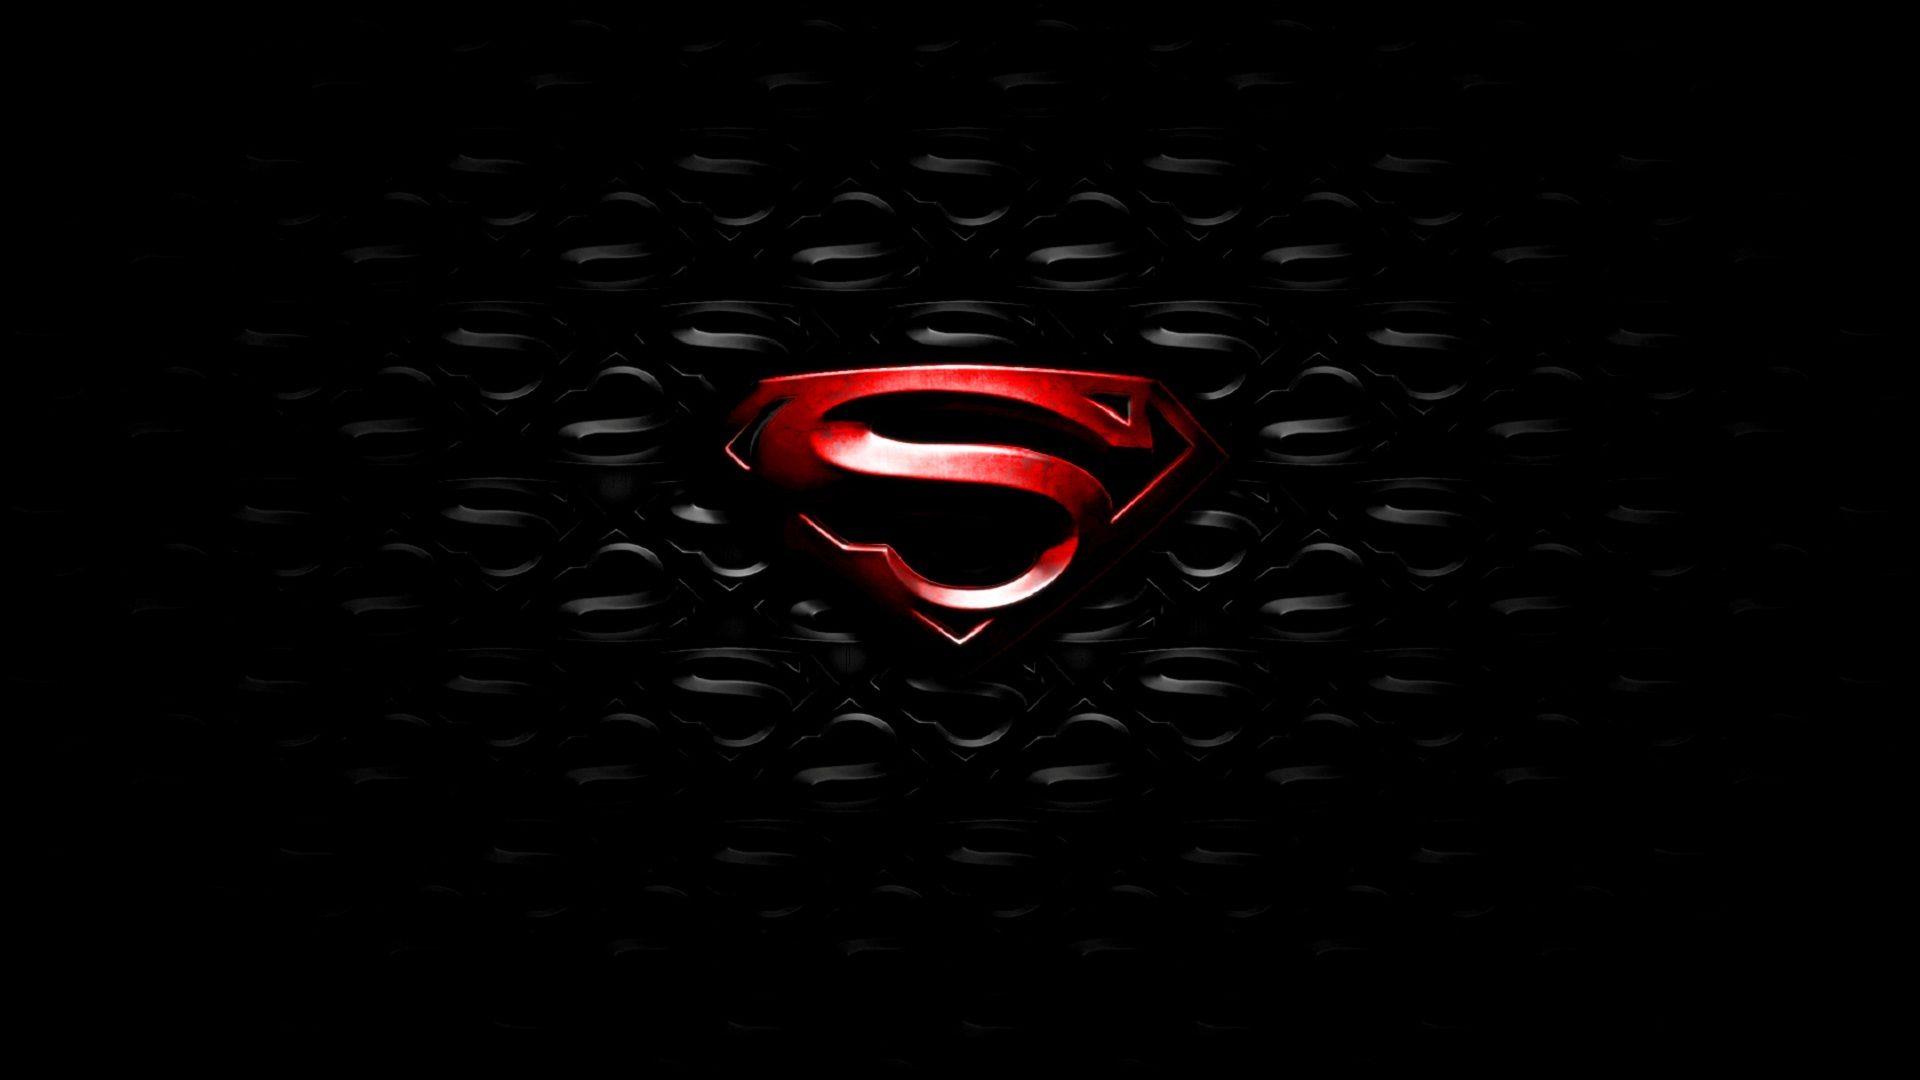 Download Gambar Black and Red Hd Wallpaper of Superman terbaru 2020